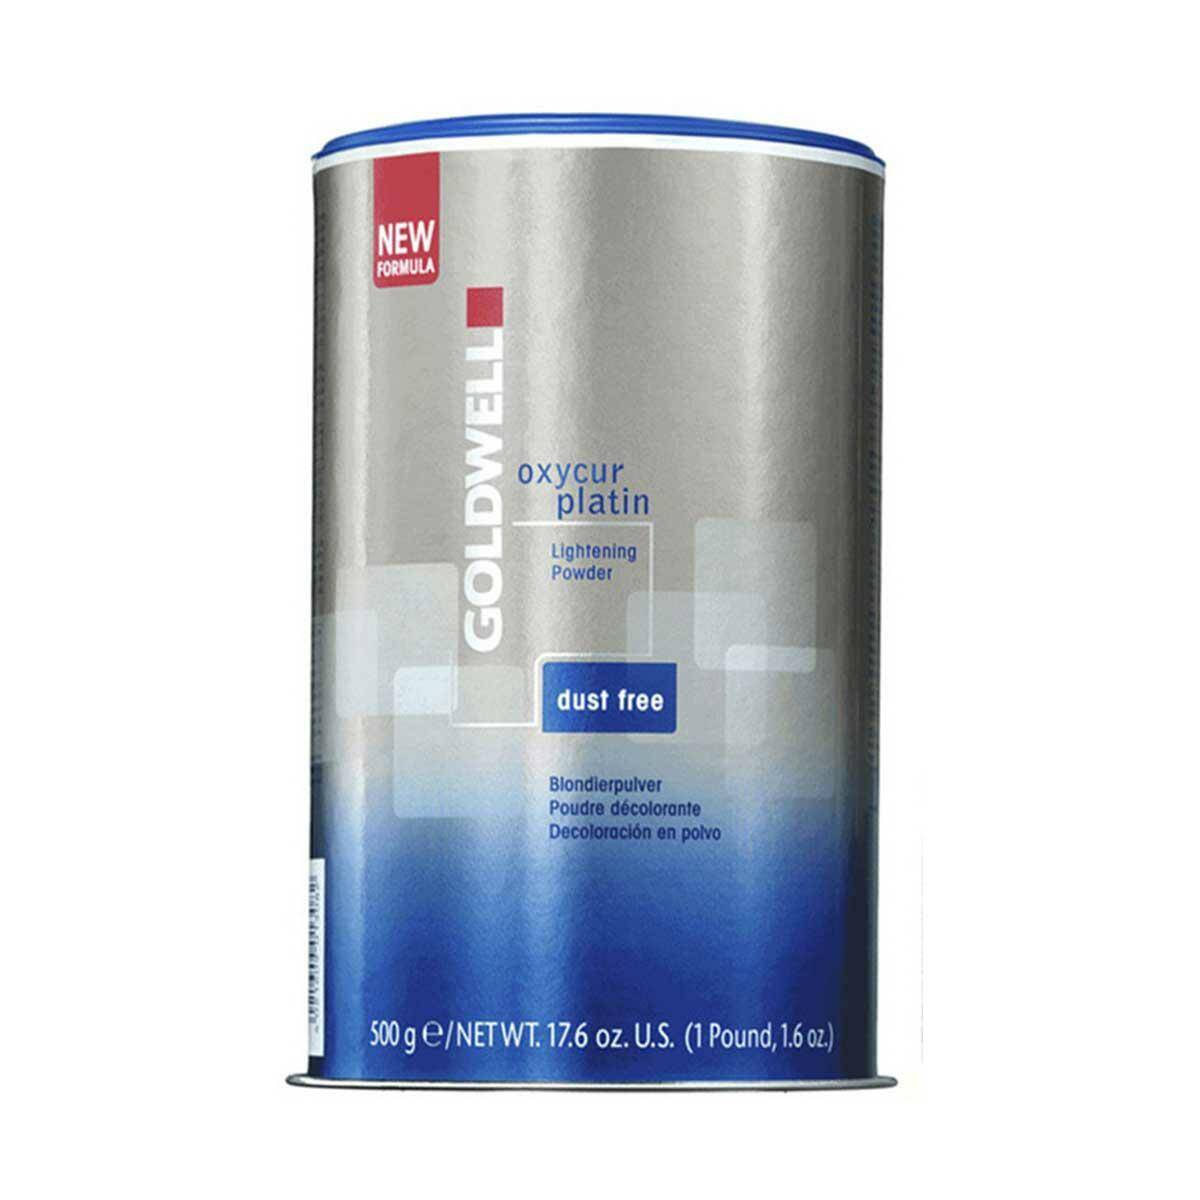 Goldwell Oxycur Platin Dust Free, Rozjaśniacz do włosów w proszku 500g (Zdjęcie 1)